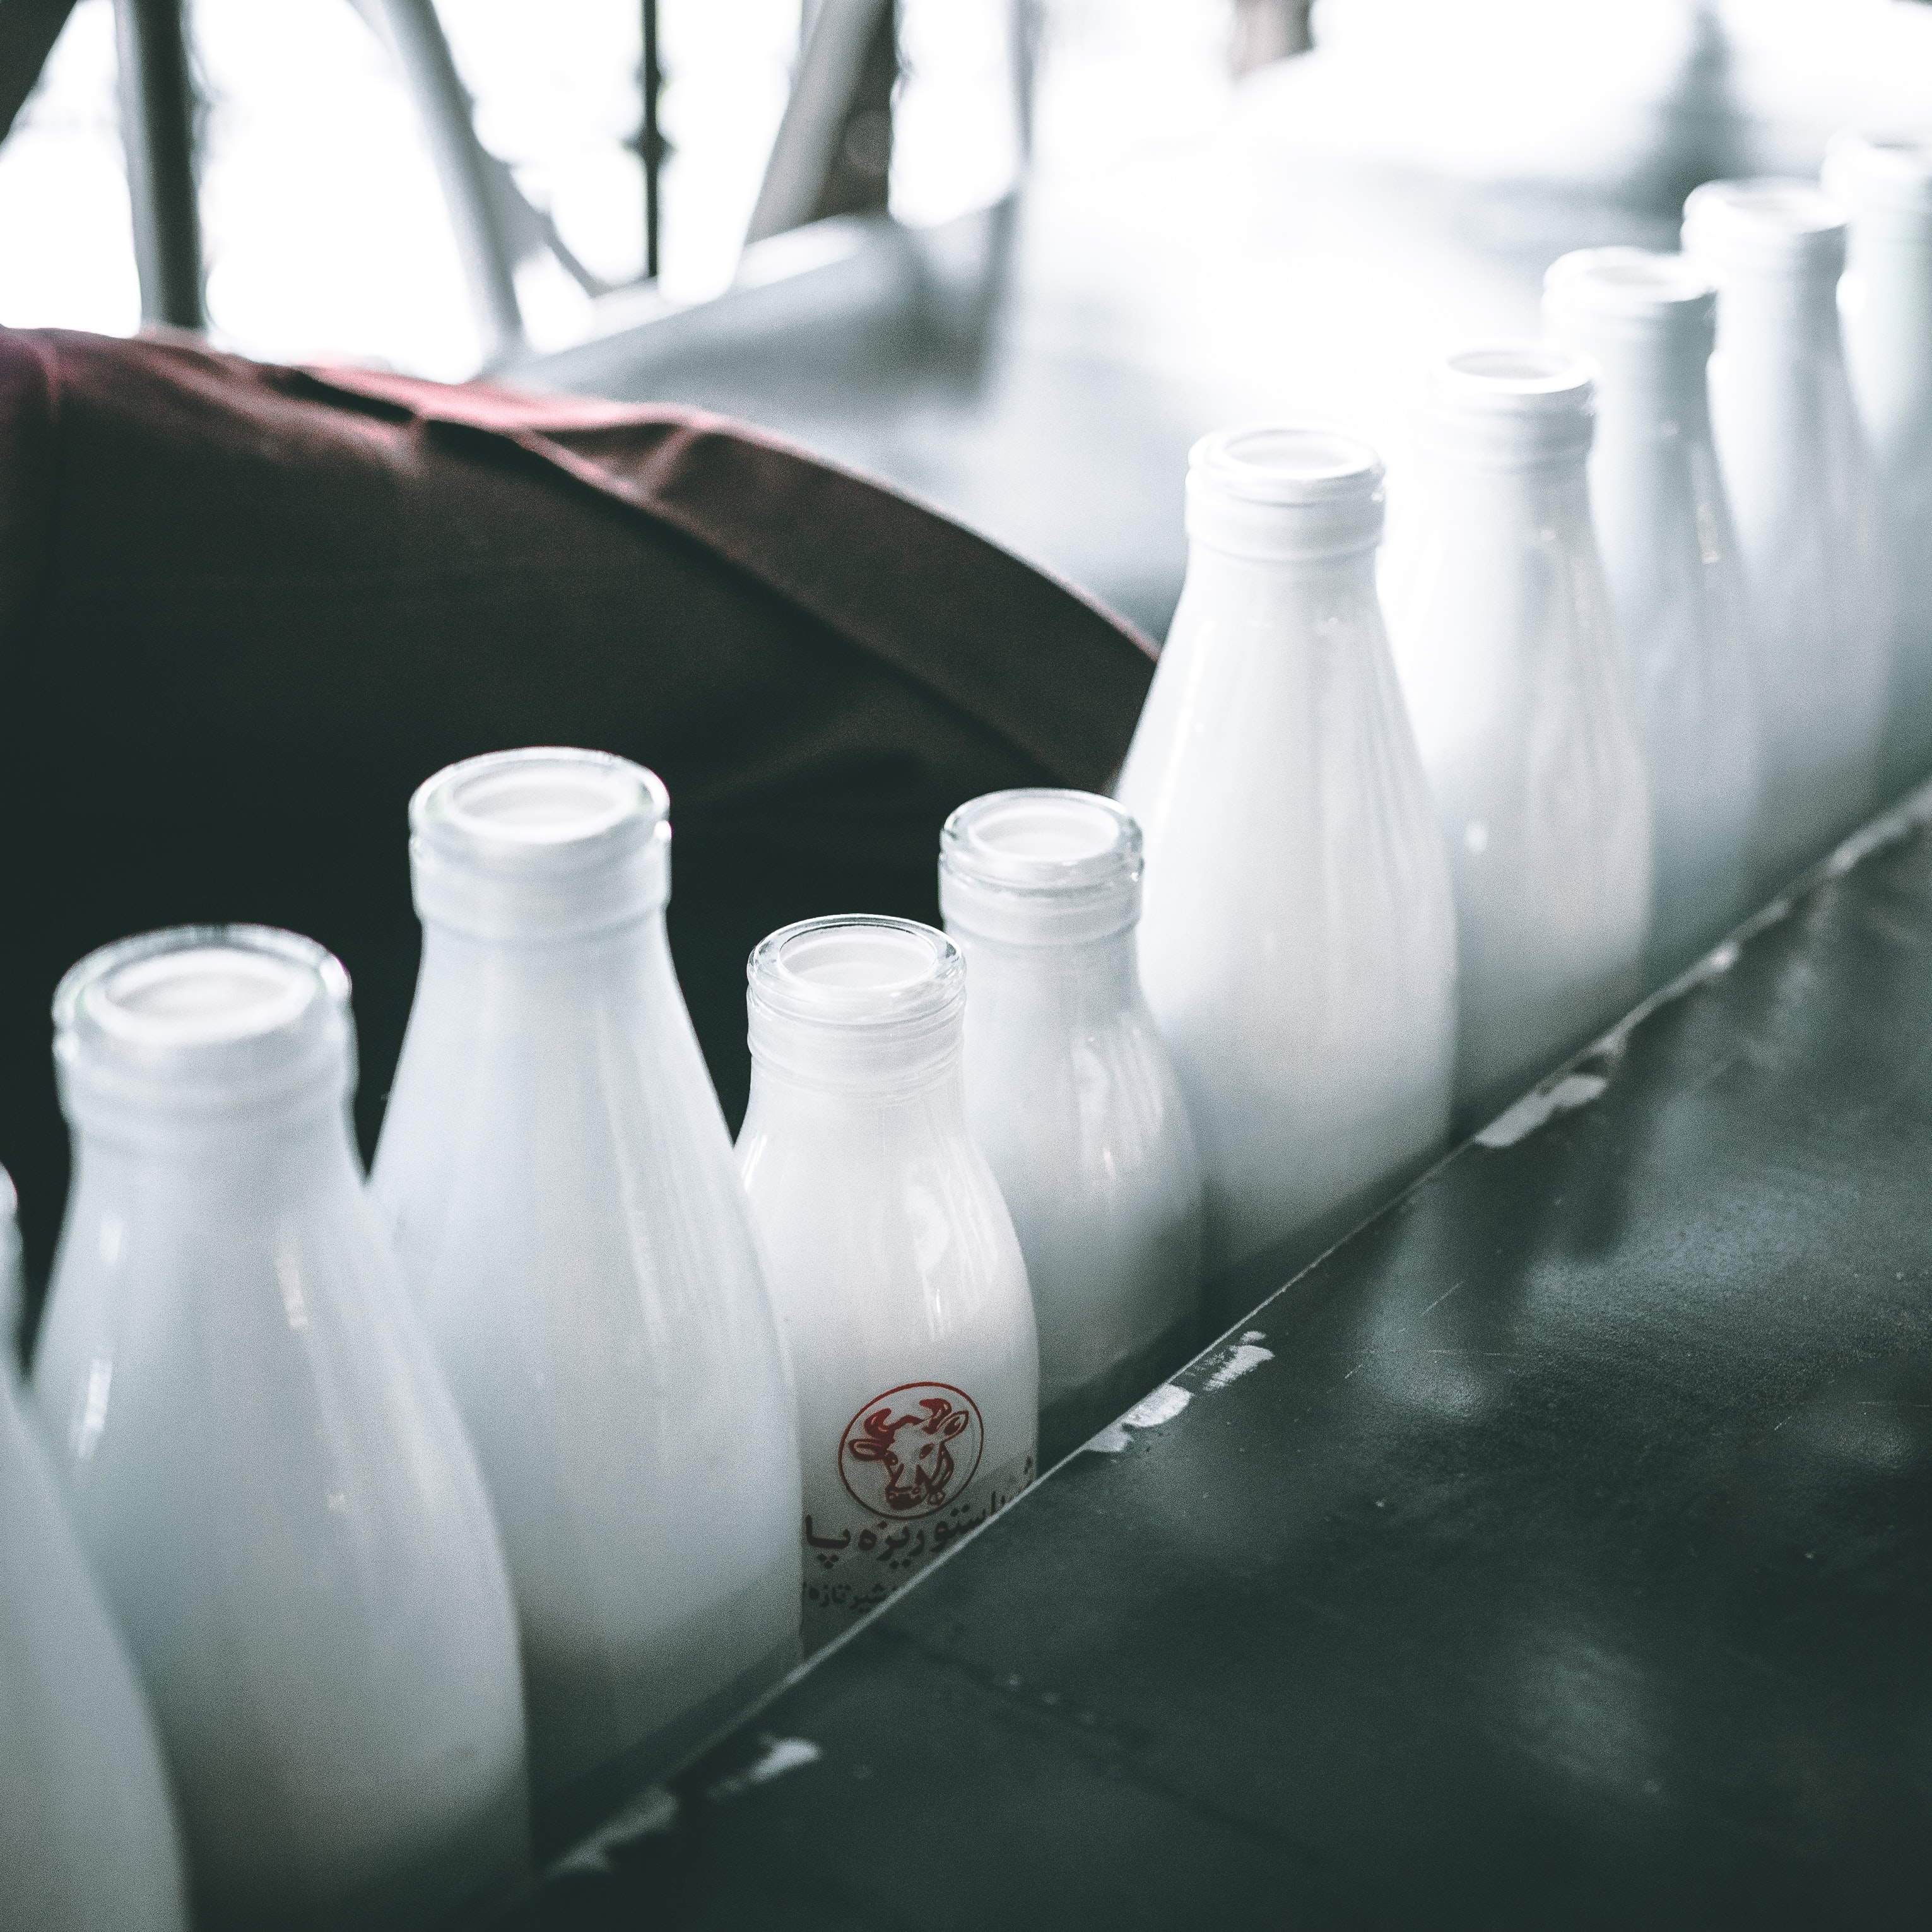 lactose-free milk